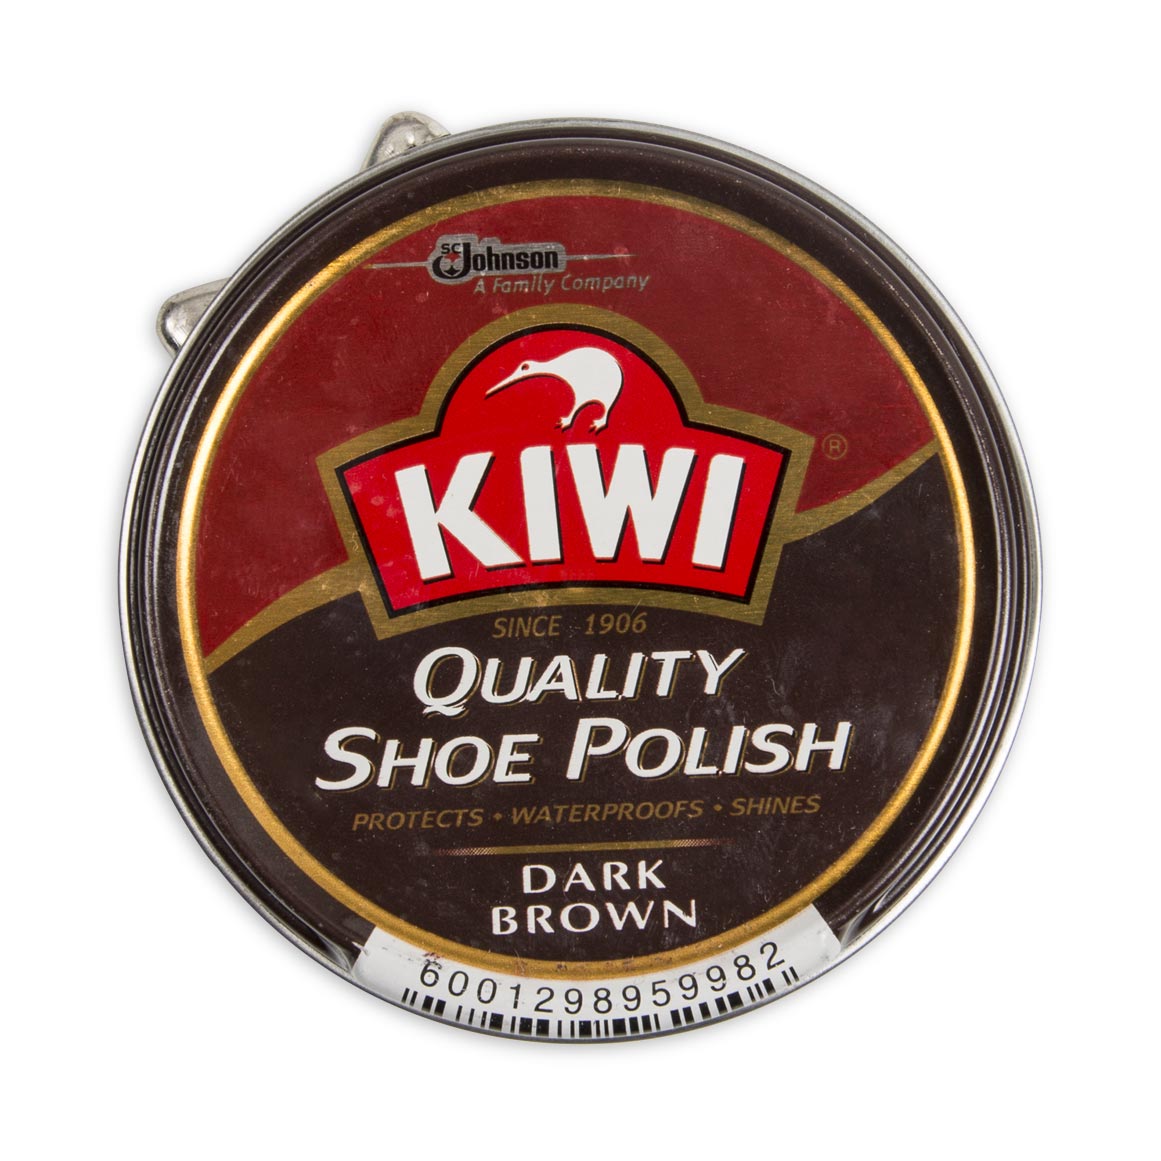 woolworths shoe polish